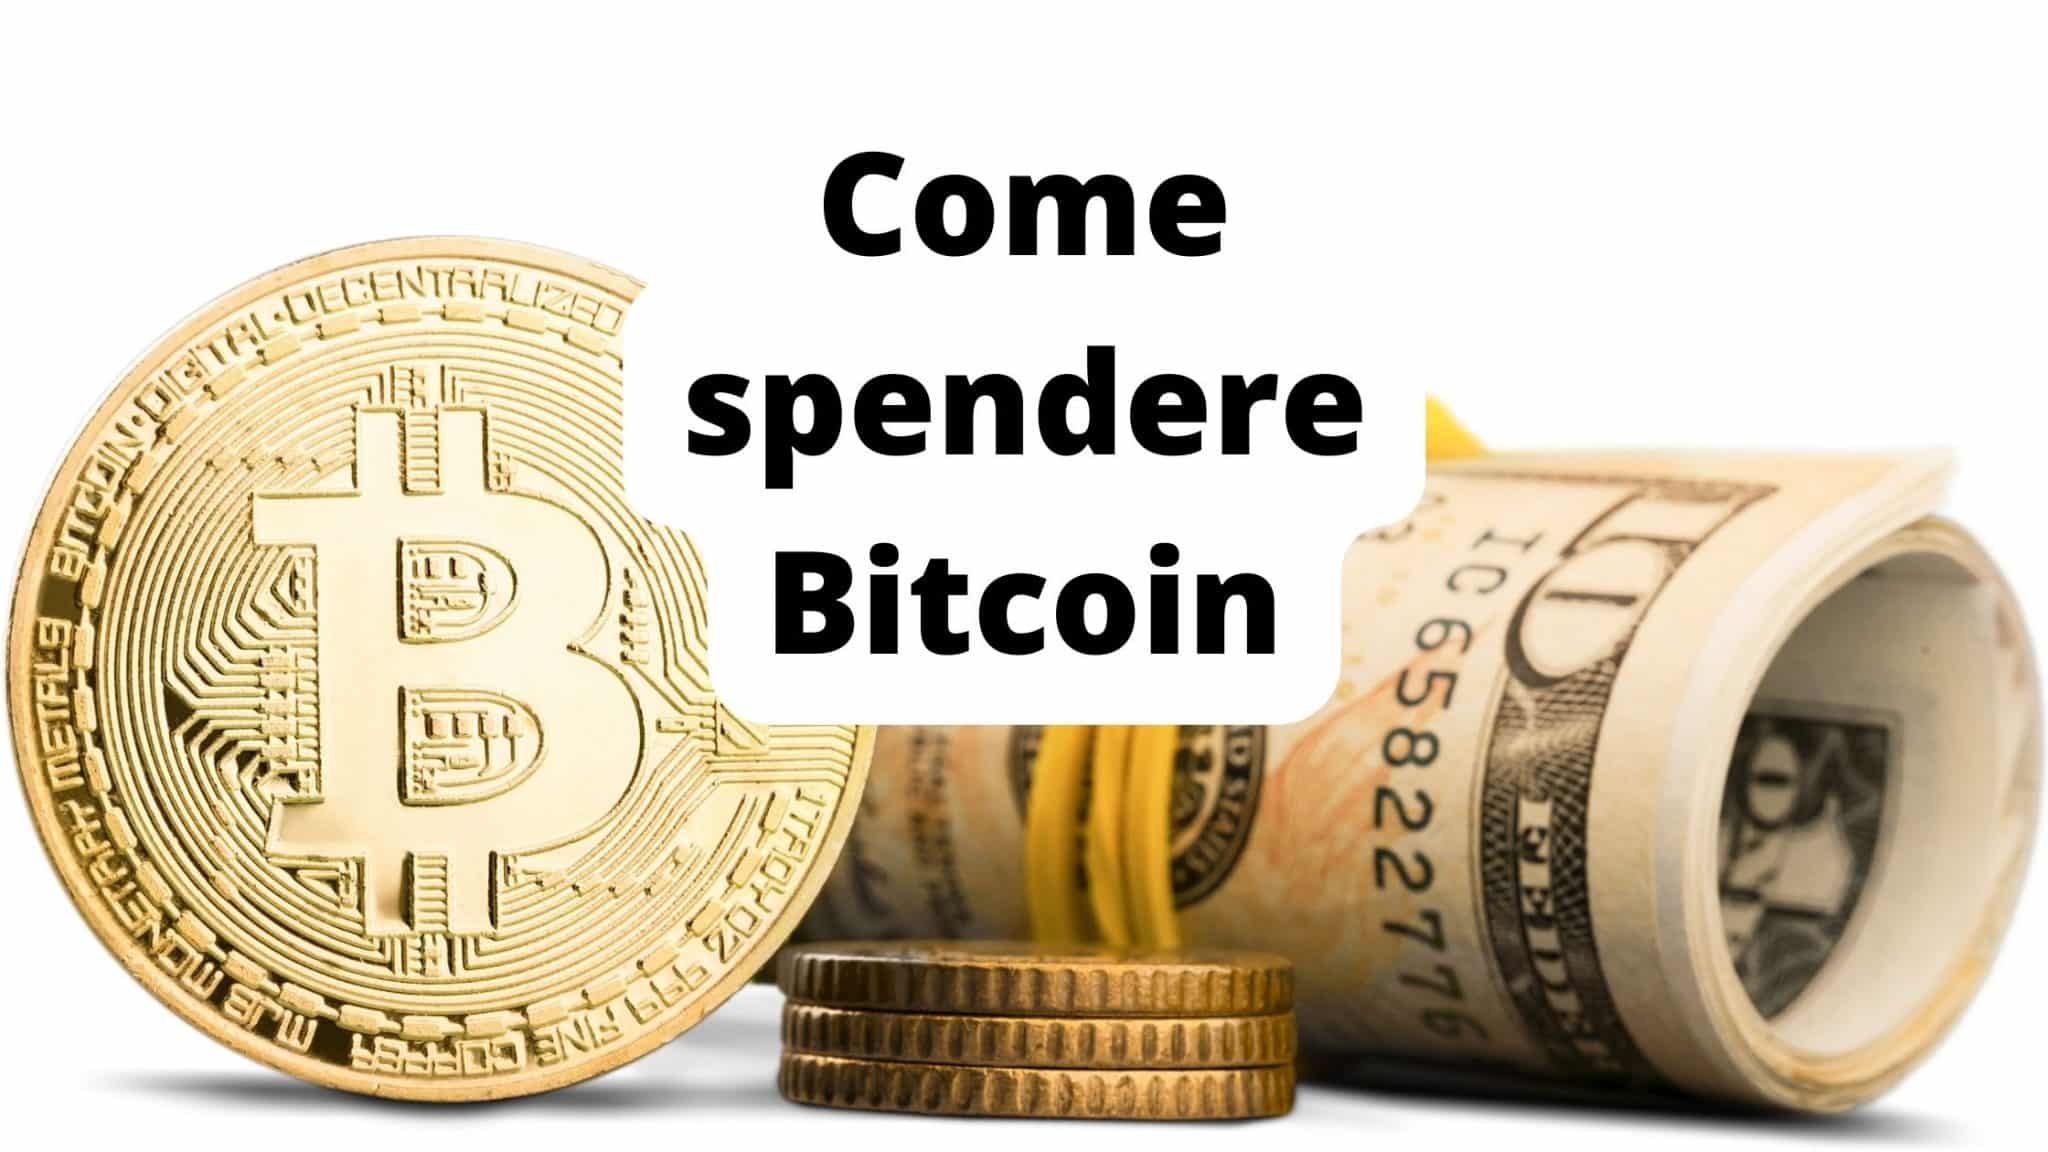 Come spendere i Bitcoin